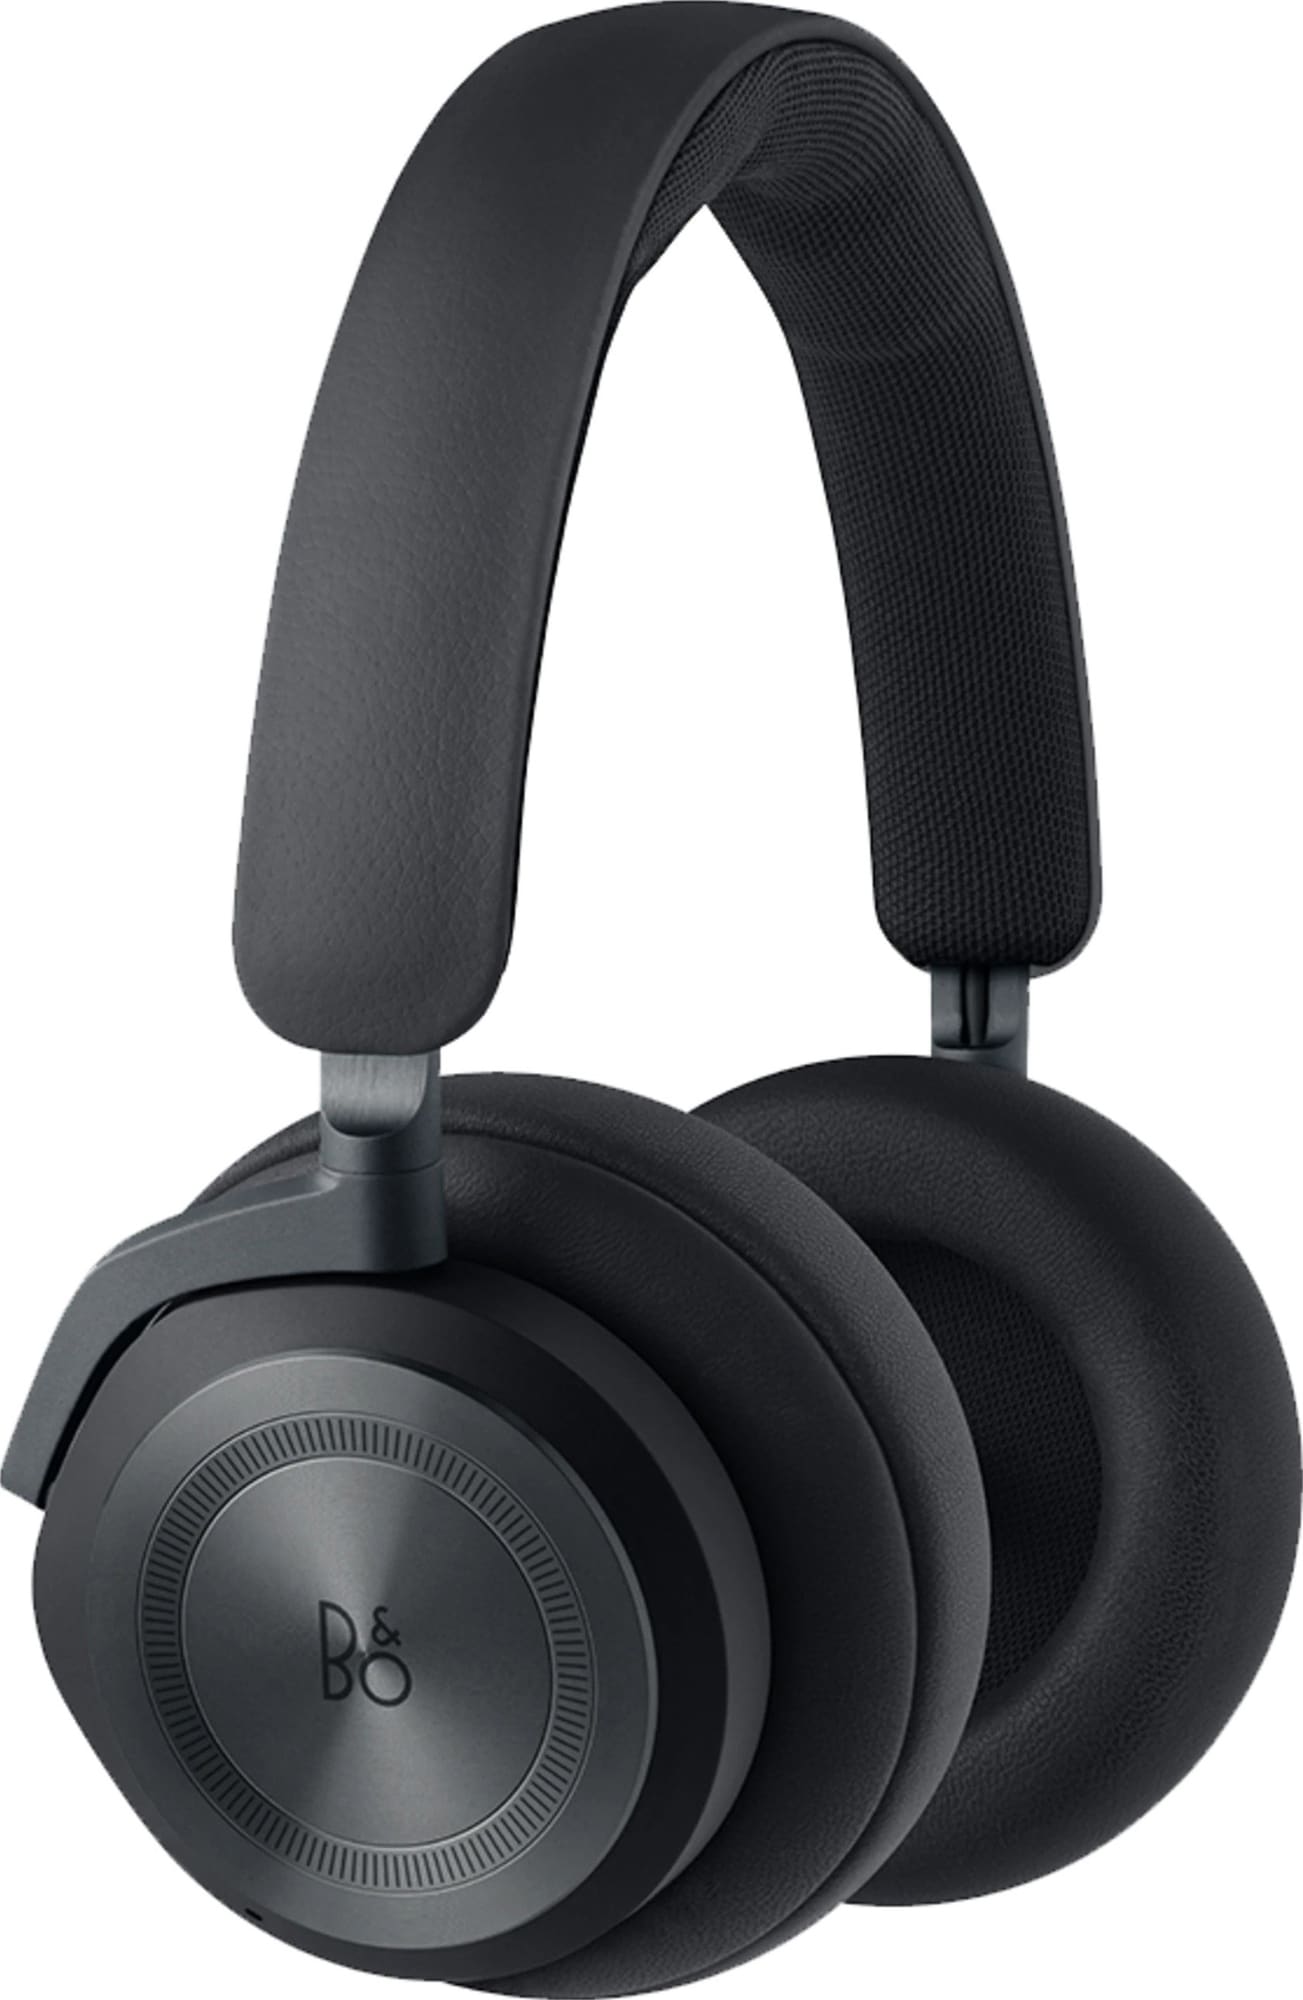 B&O Beoplay HX trådløse around-ear høretelefoner (sort) | Elgiganten